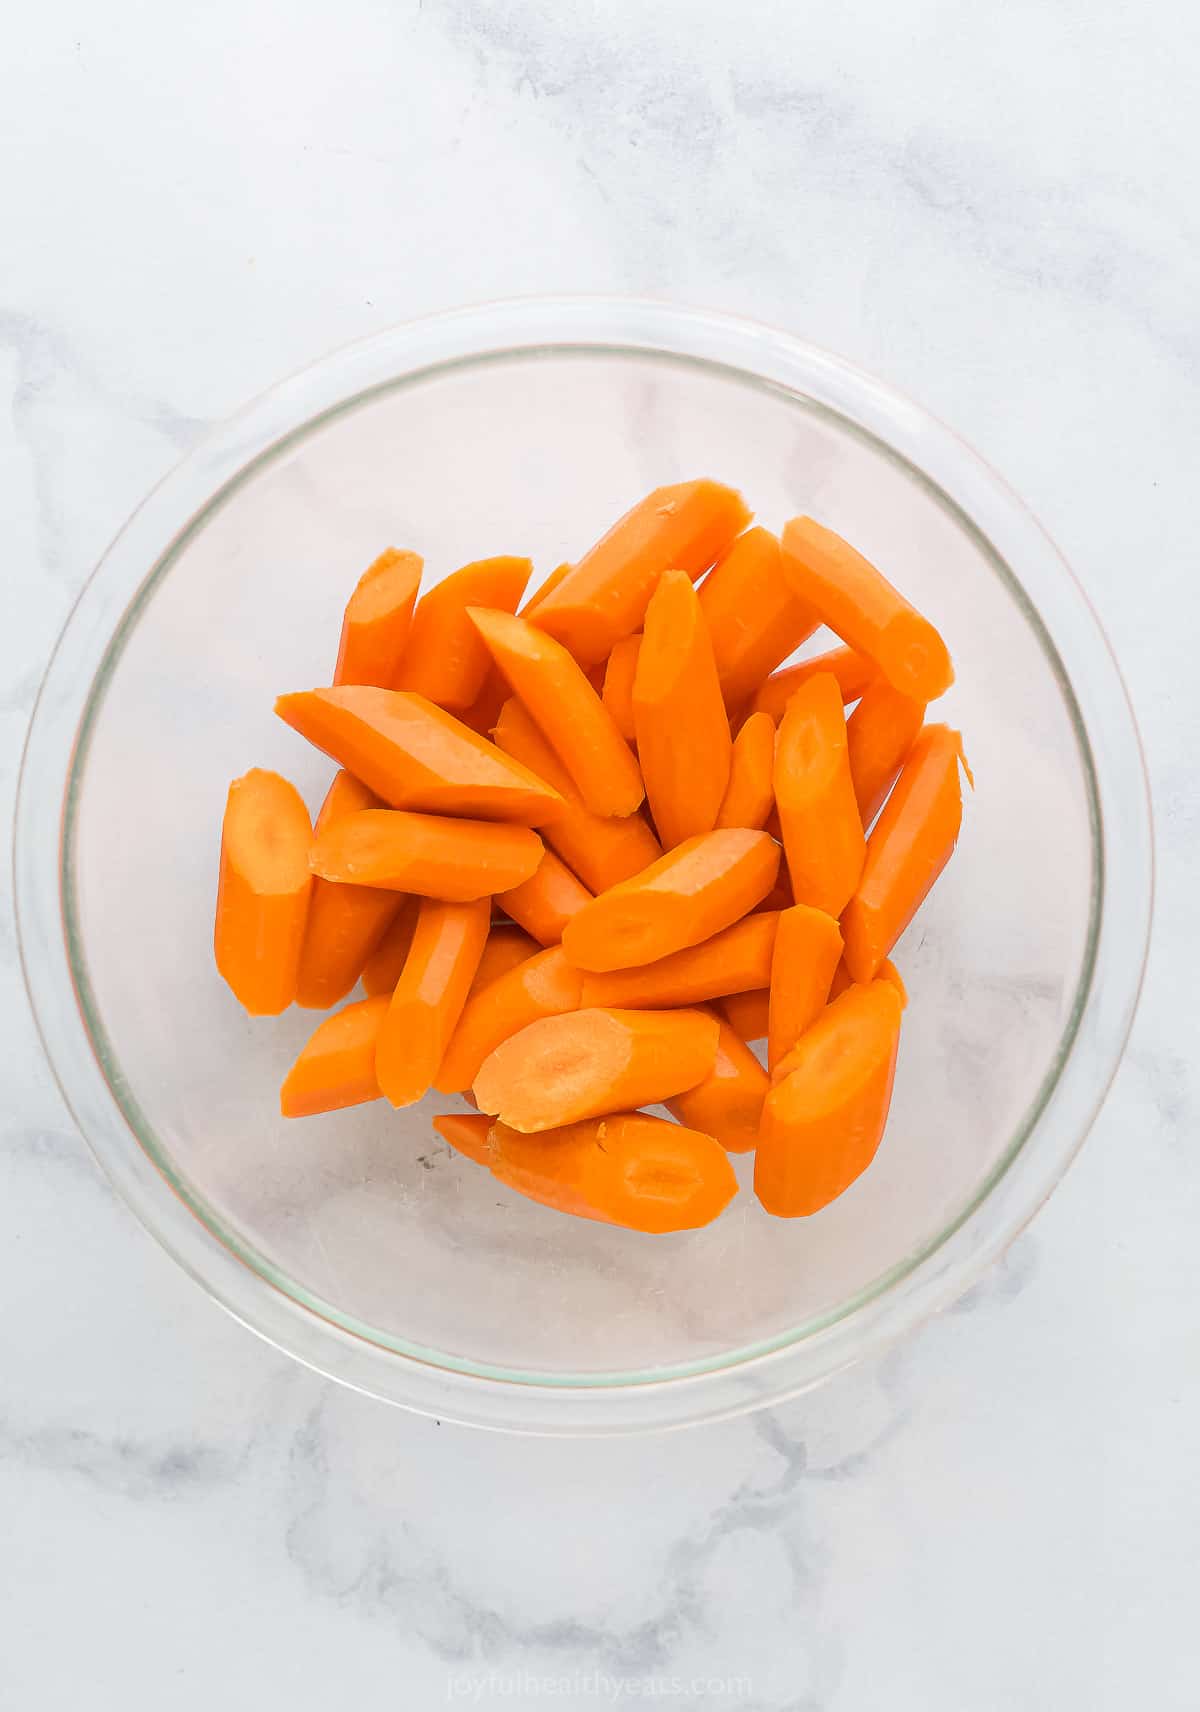 a bowl of cut up carrots